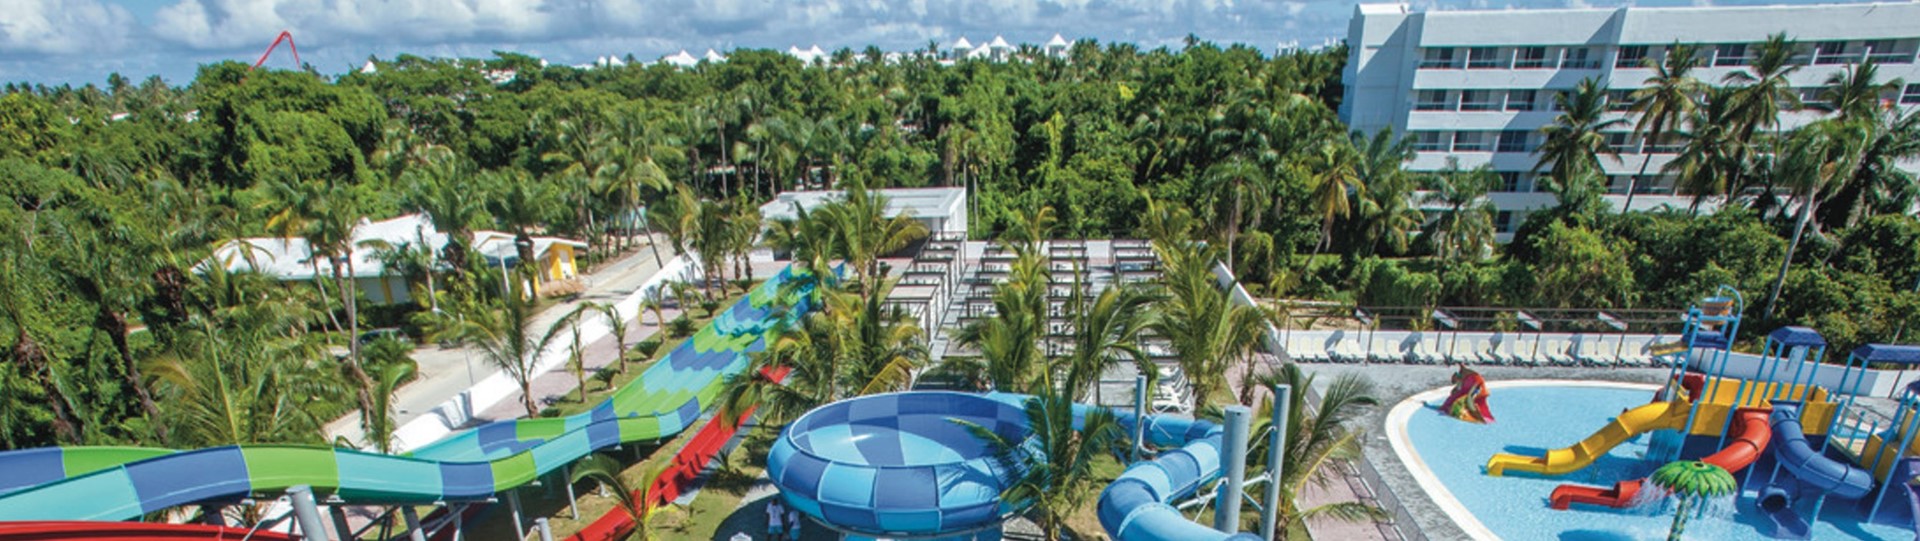 RIU Splash Water World en de RIU Pool Party op Punta Cana